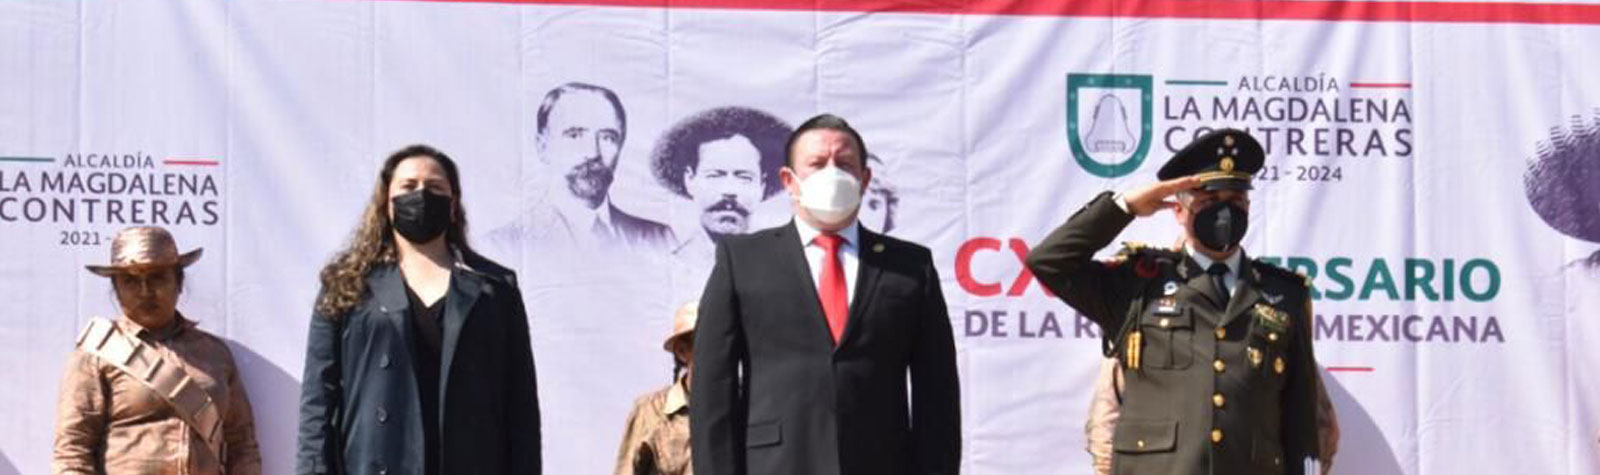 Se conmemora el 111 aniversario de la Revolución Mexicana en La Magdalena Contreras